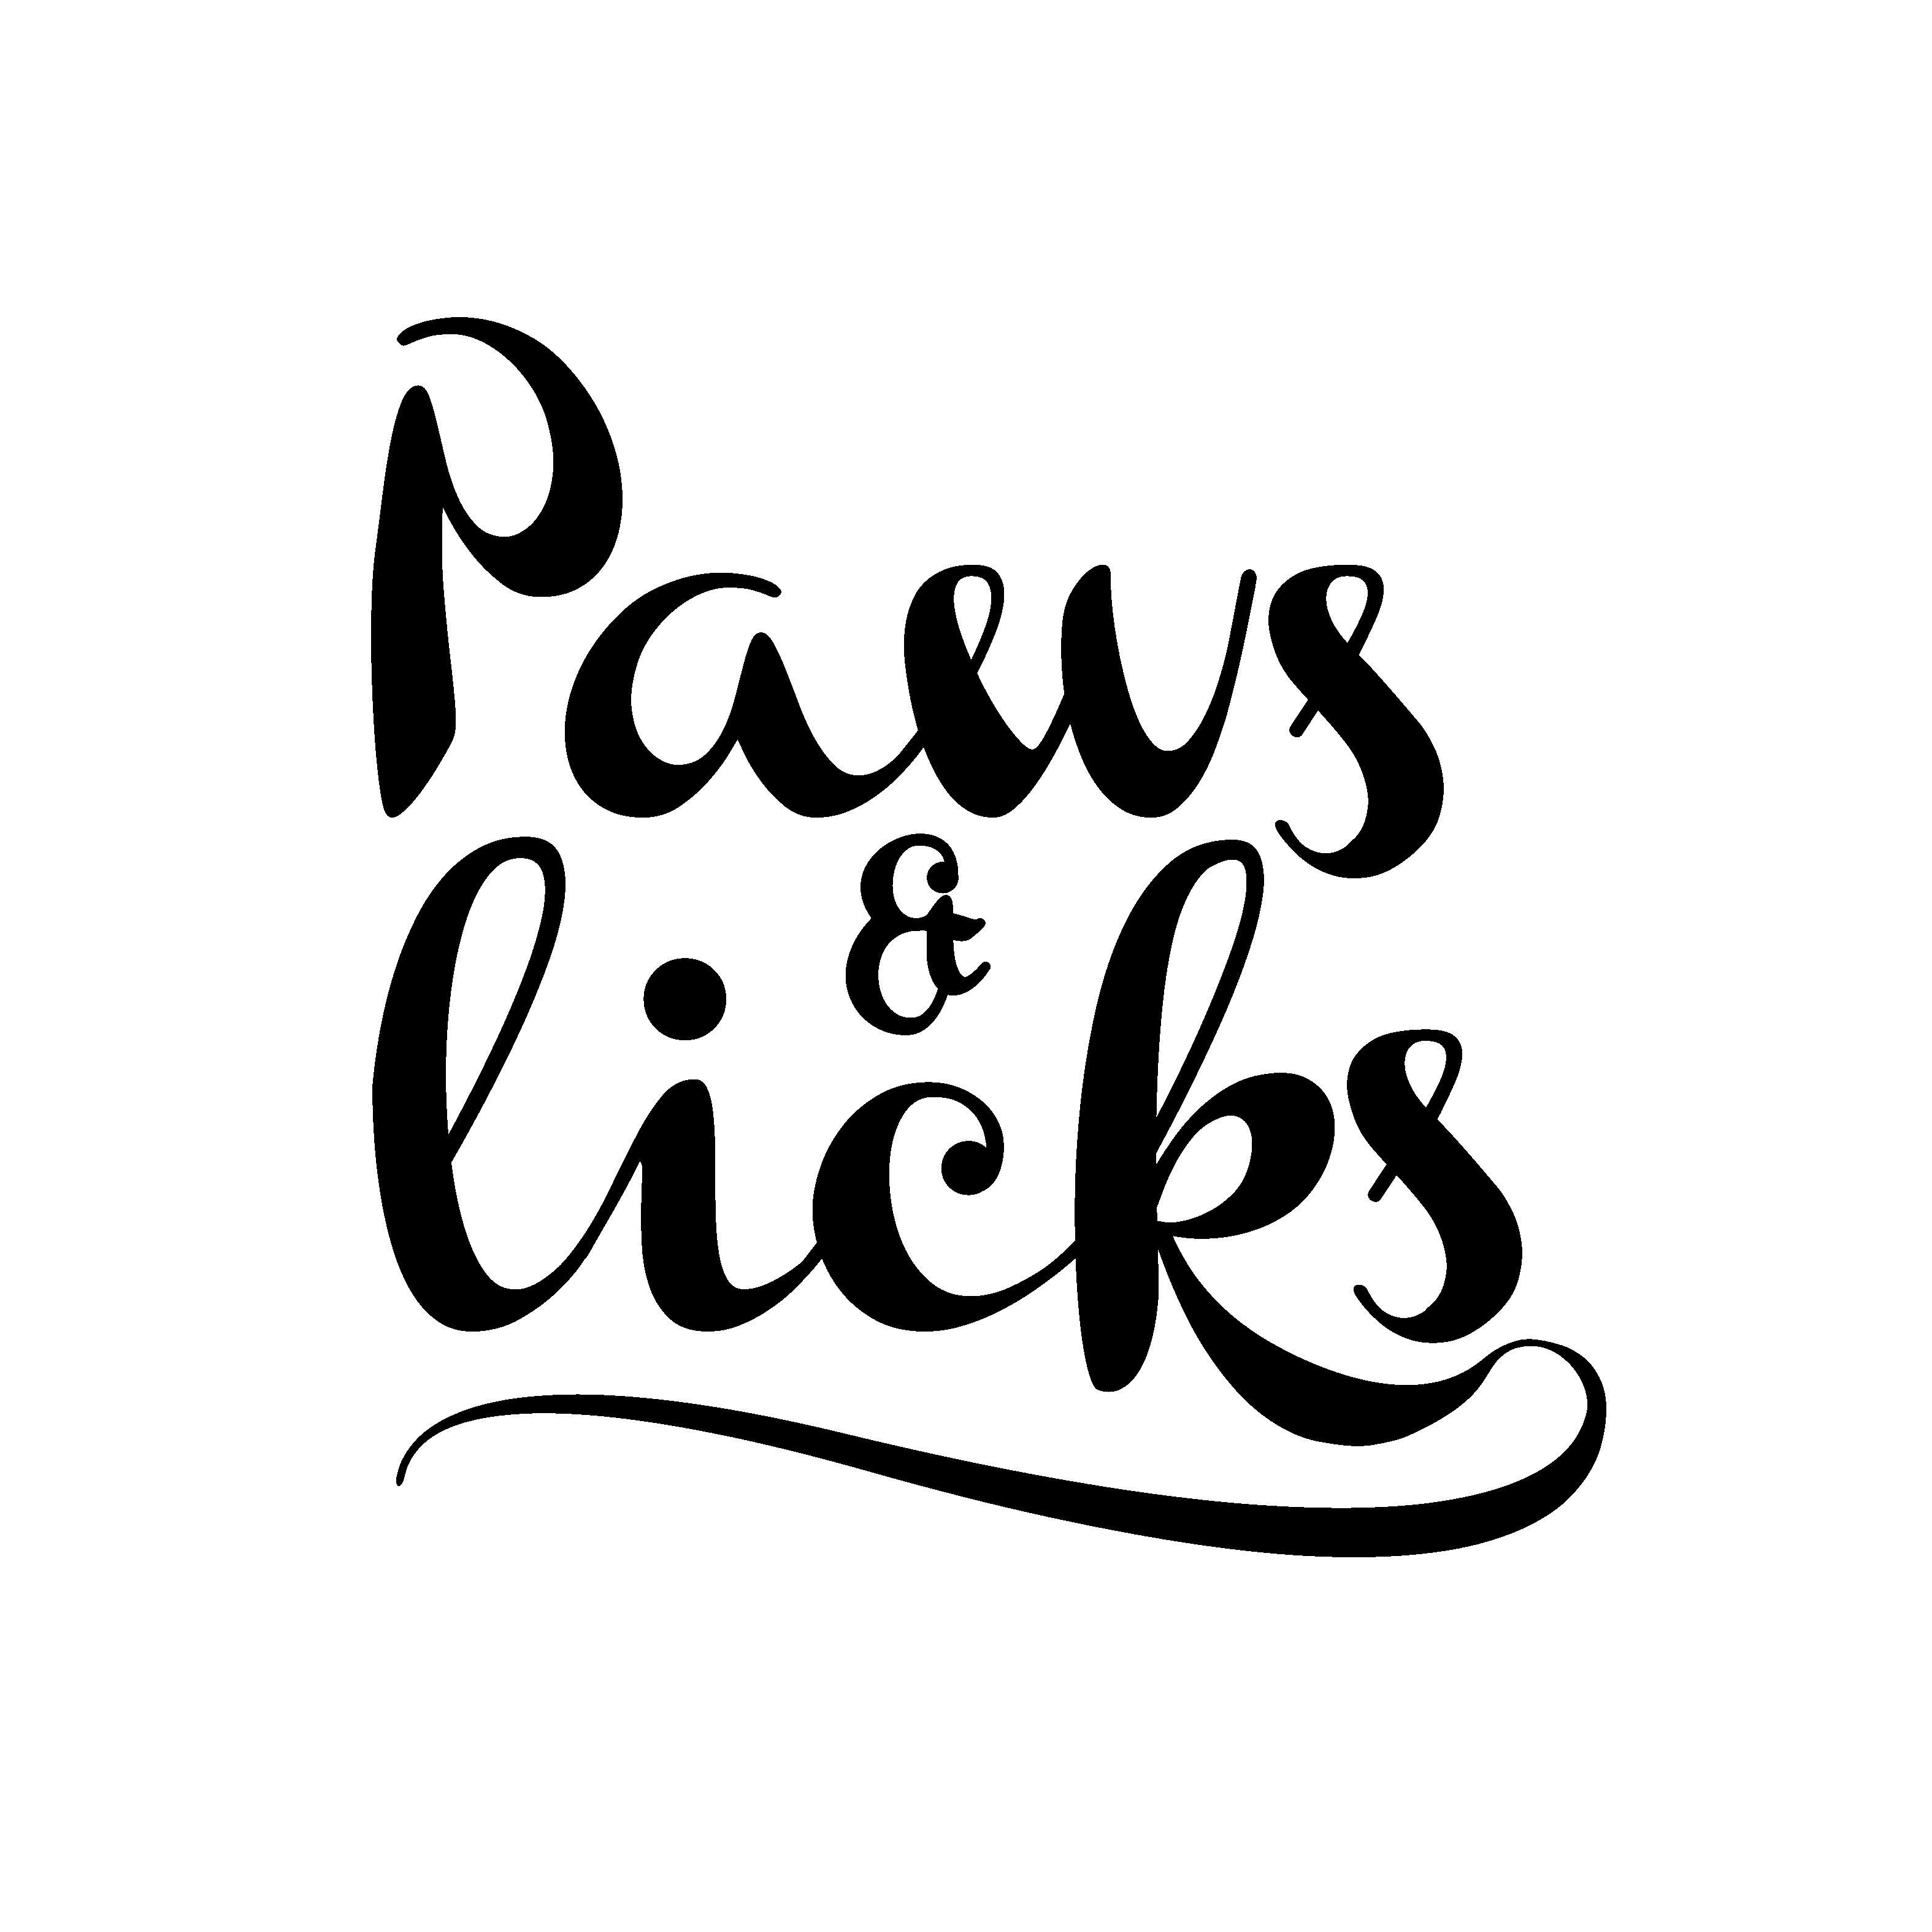 Parceiro Paws & Licks